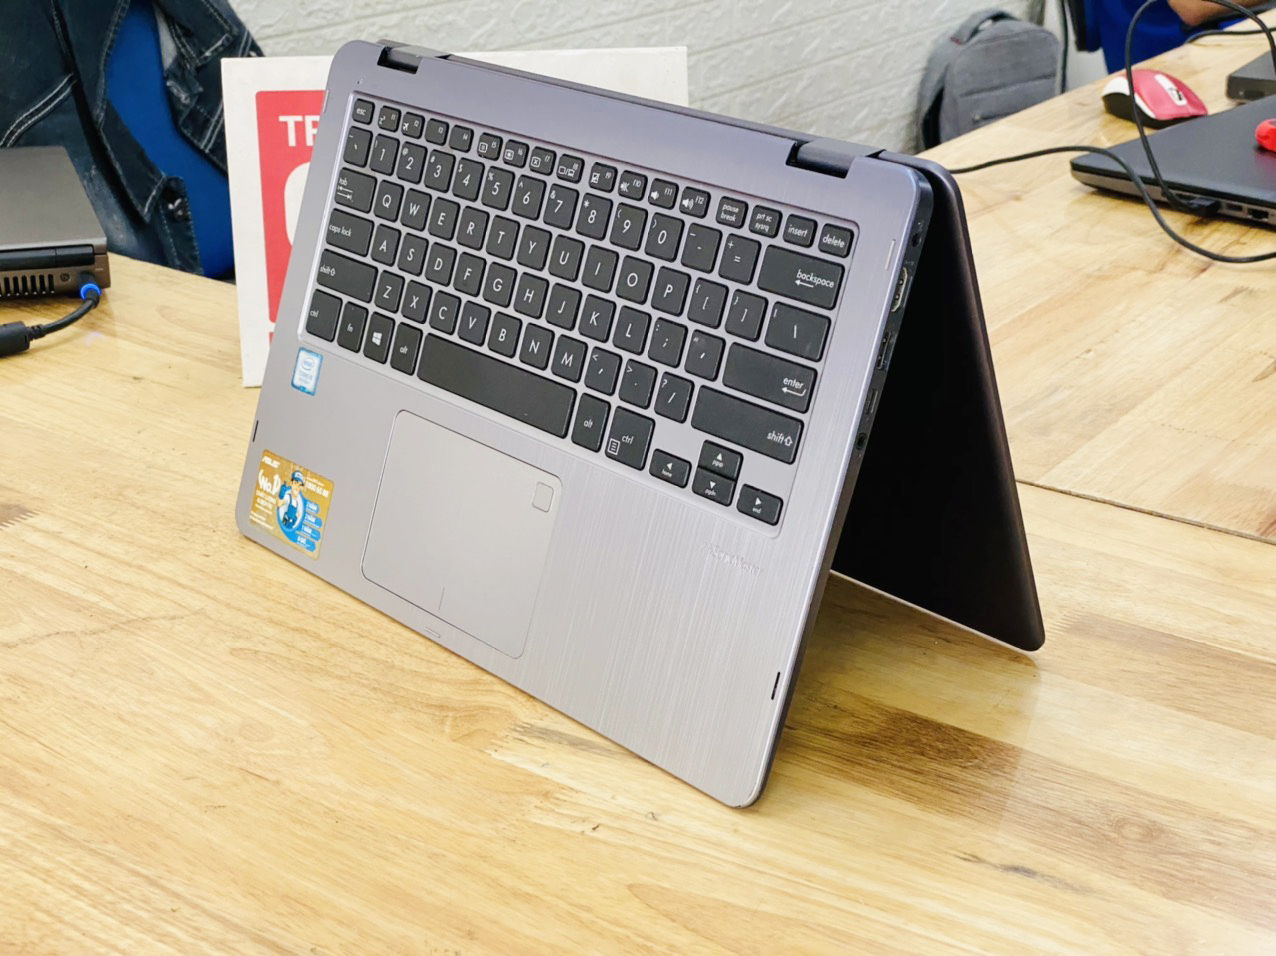 Laptop Asus TP410UA i5-8250U Ram 8G SSD 128G + HDD 500G 14 inch Cảm Ứng Xoay 360 Độ Like New